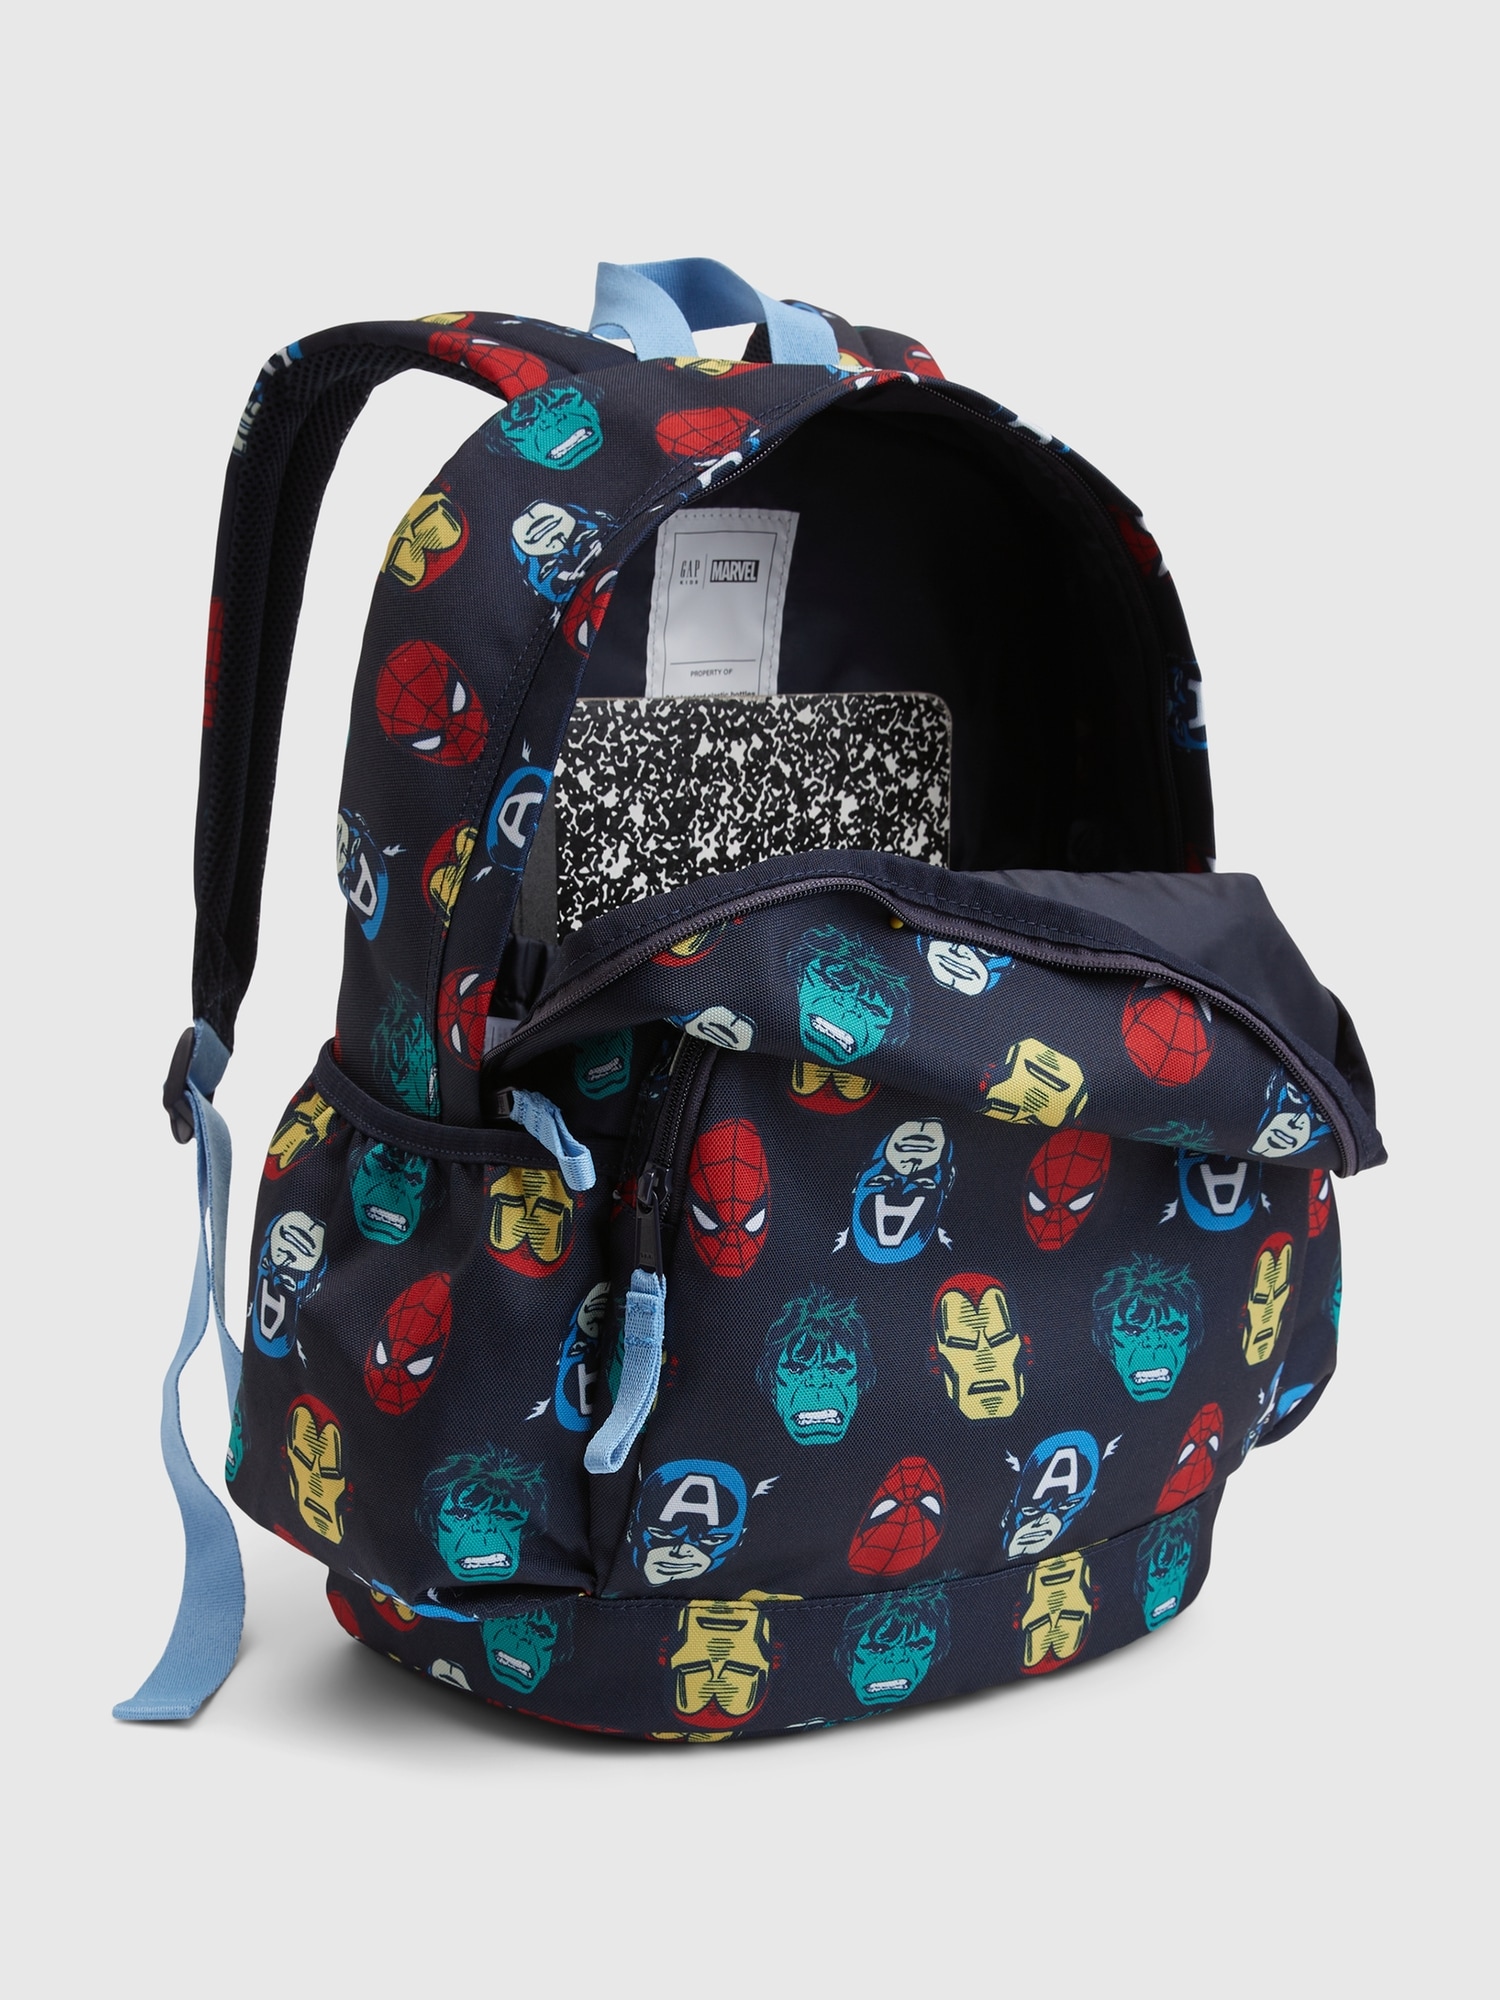 Spider Backpacks for Sale